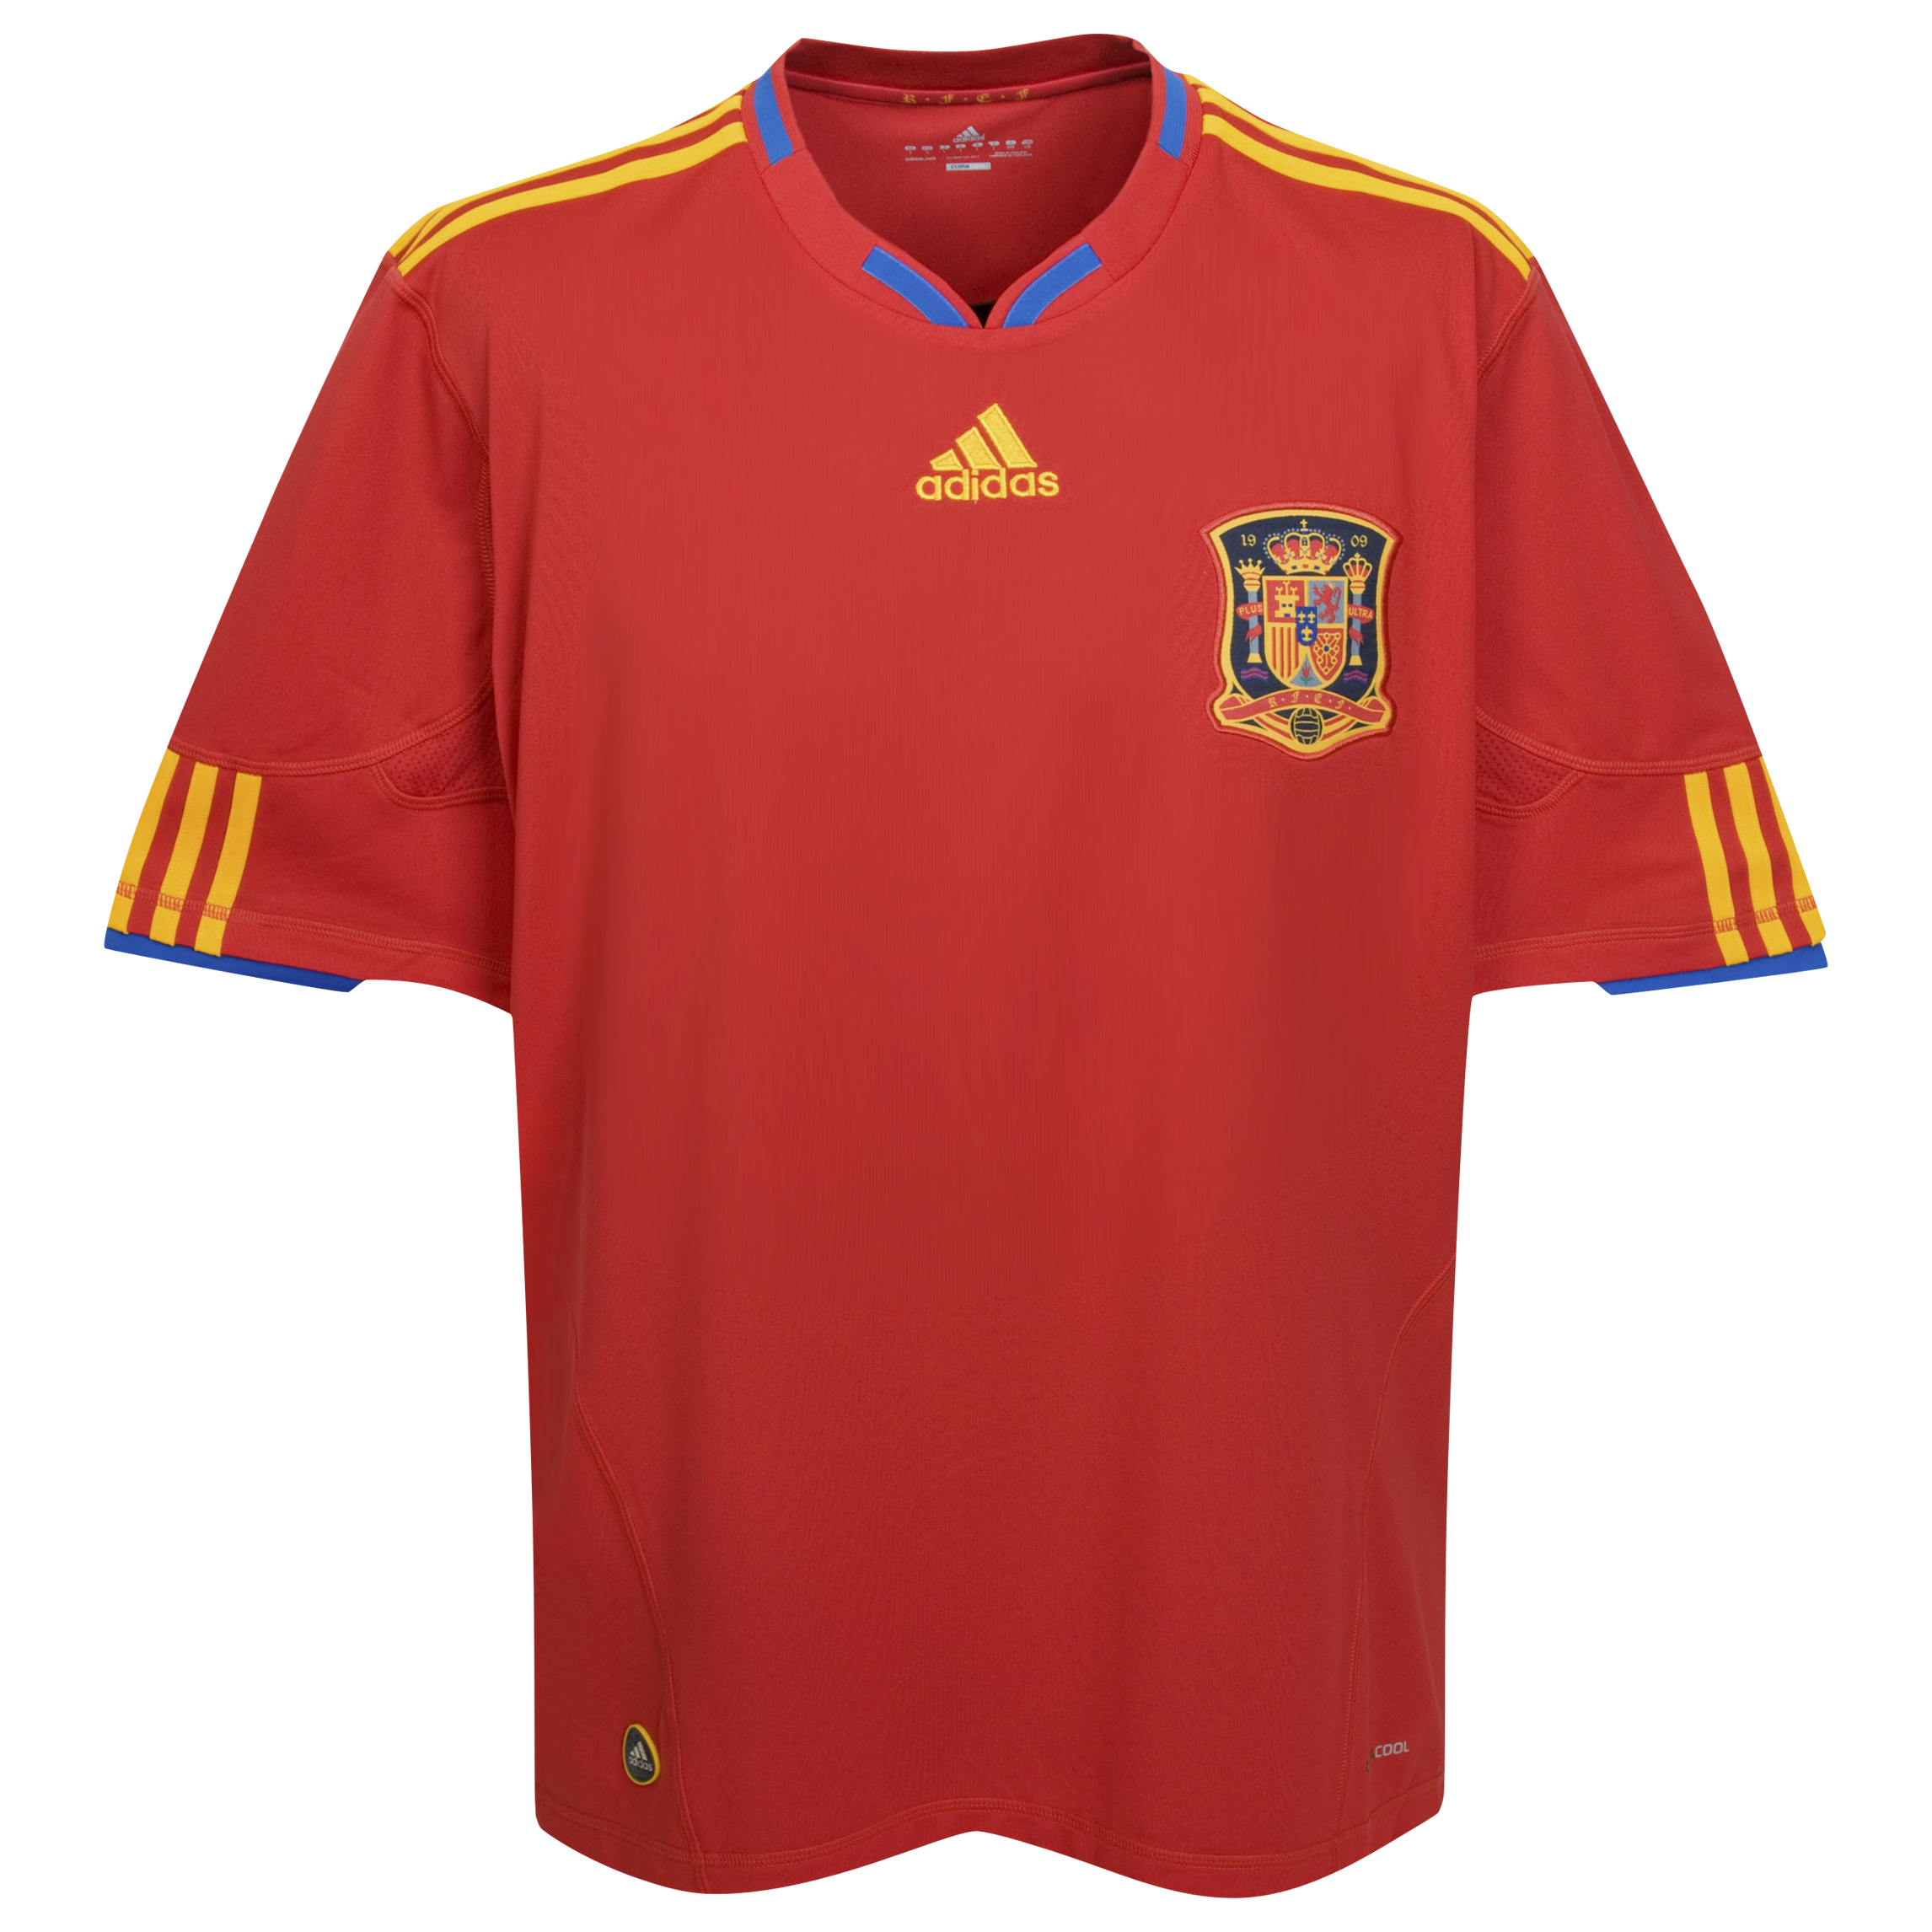 الملابس النهائيه لكأس العالم (2010) Cfc-63759